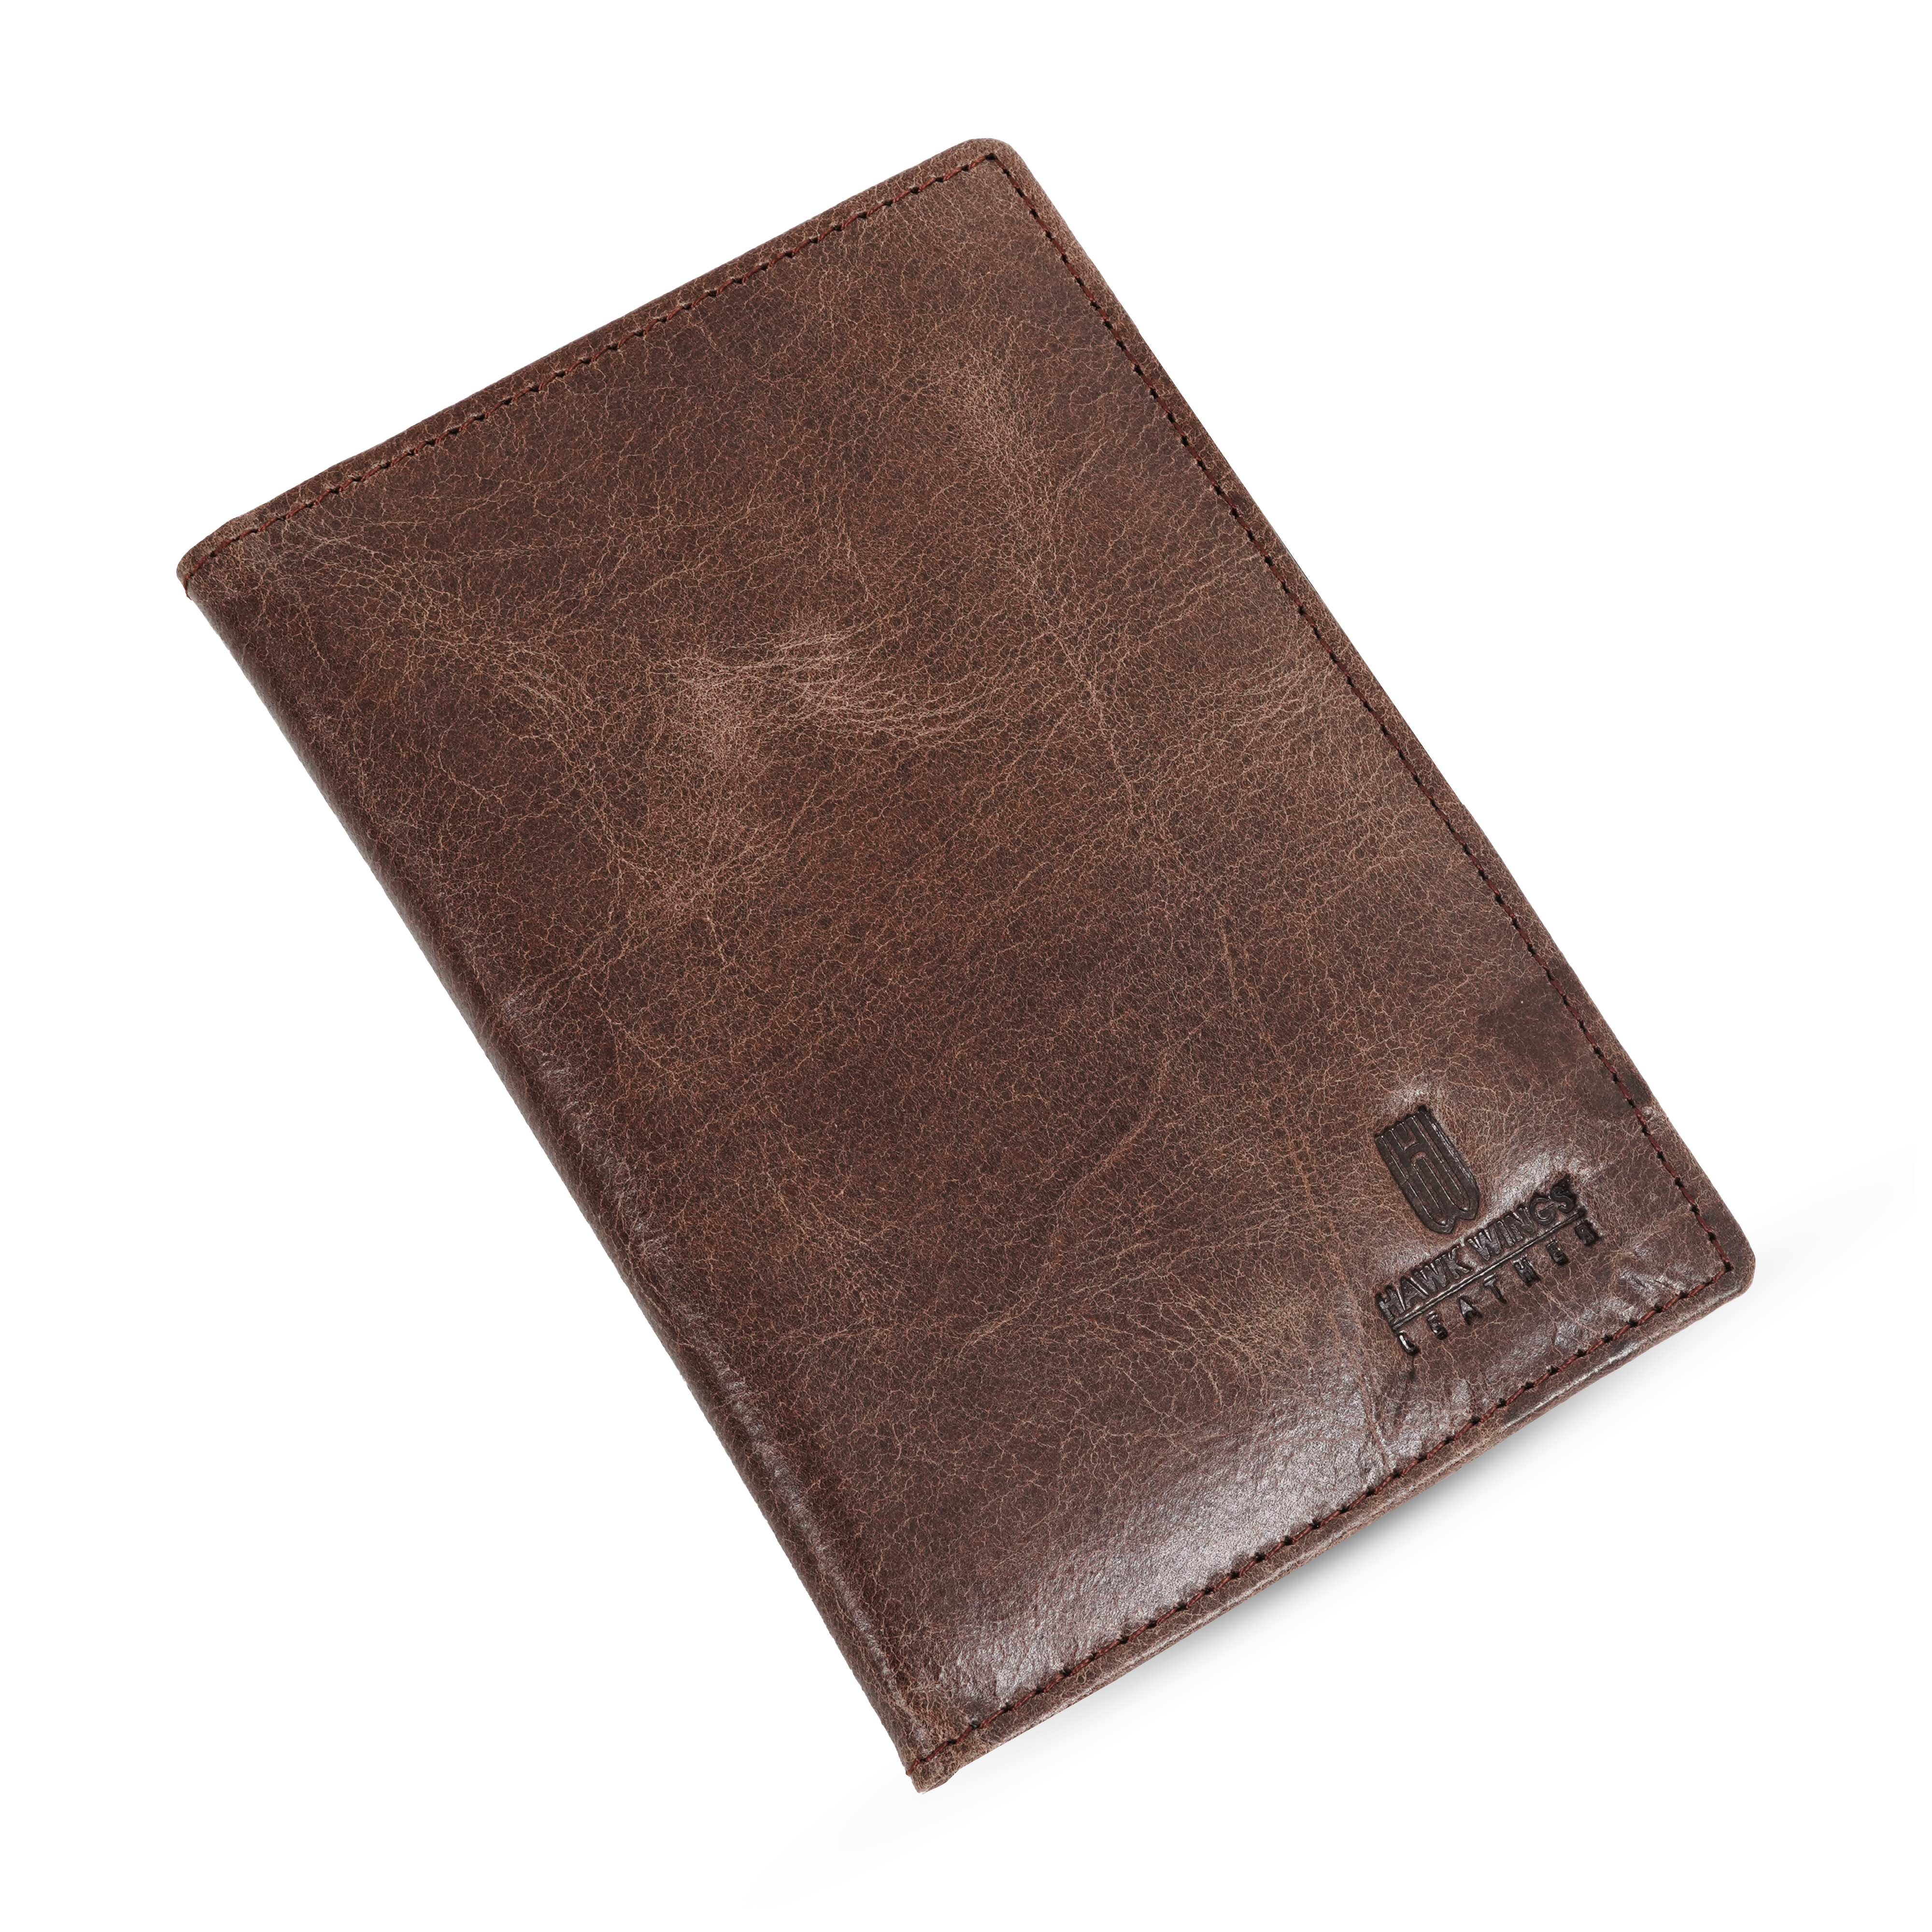 Genuine Leather  Card Holder||Travel Passport Holder||Travel Document Holder||Passport Cover For Men&Women ( BROWN)-asset-601